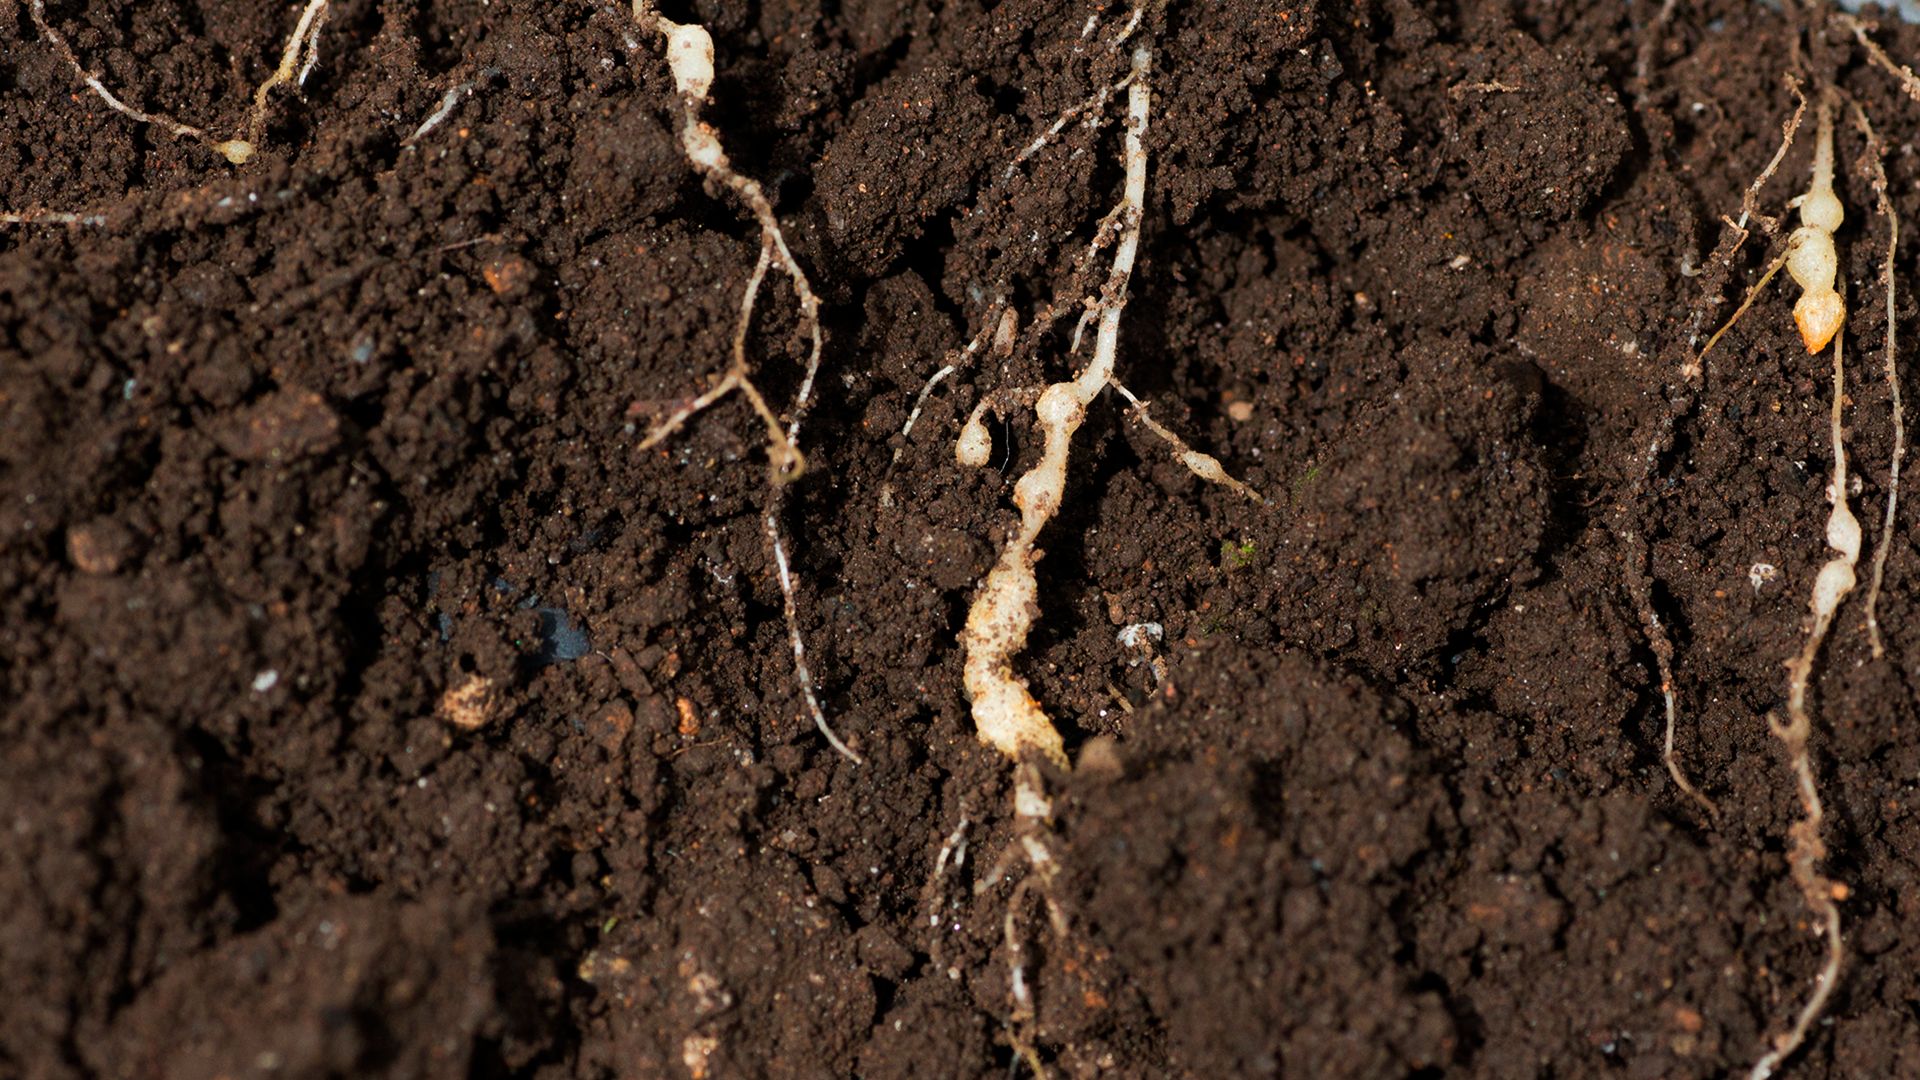 raiz de planta na terra com nematoide